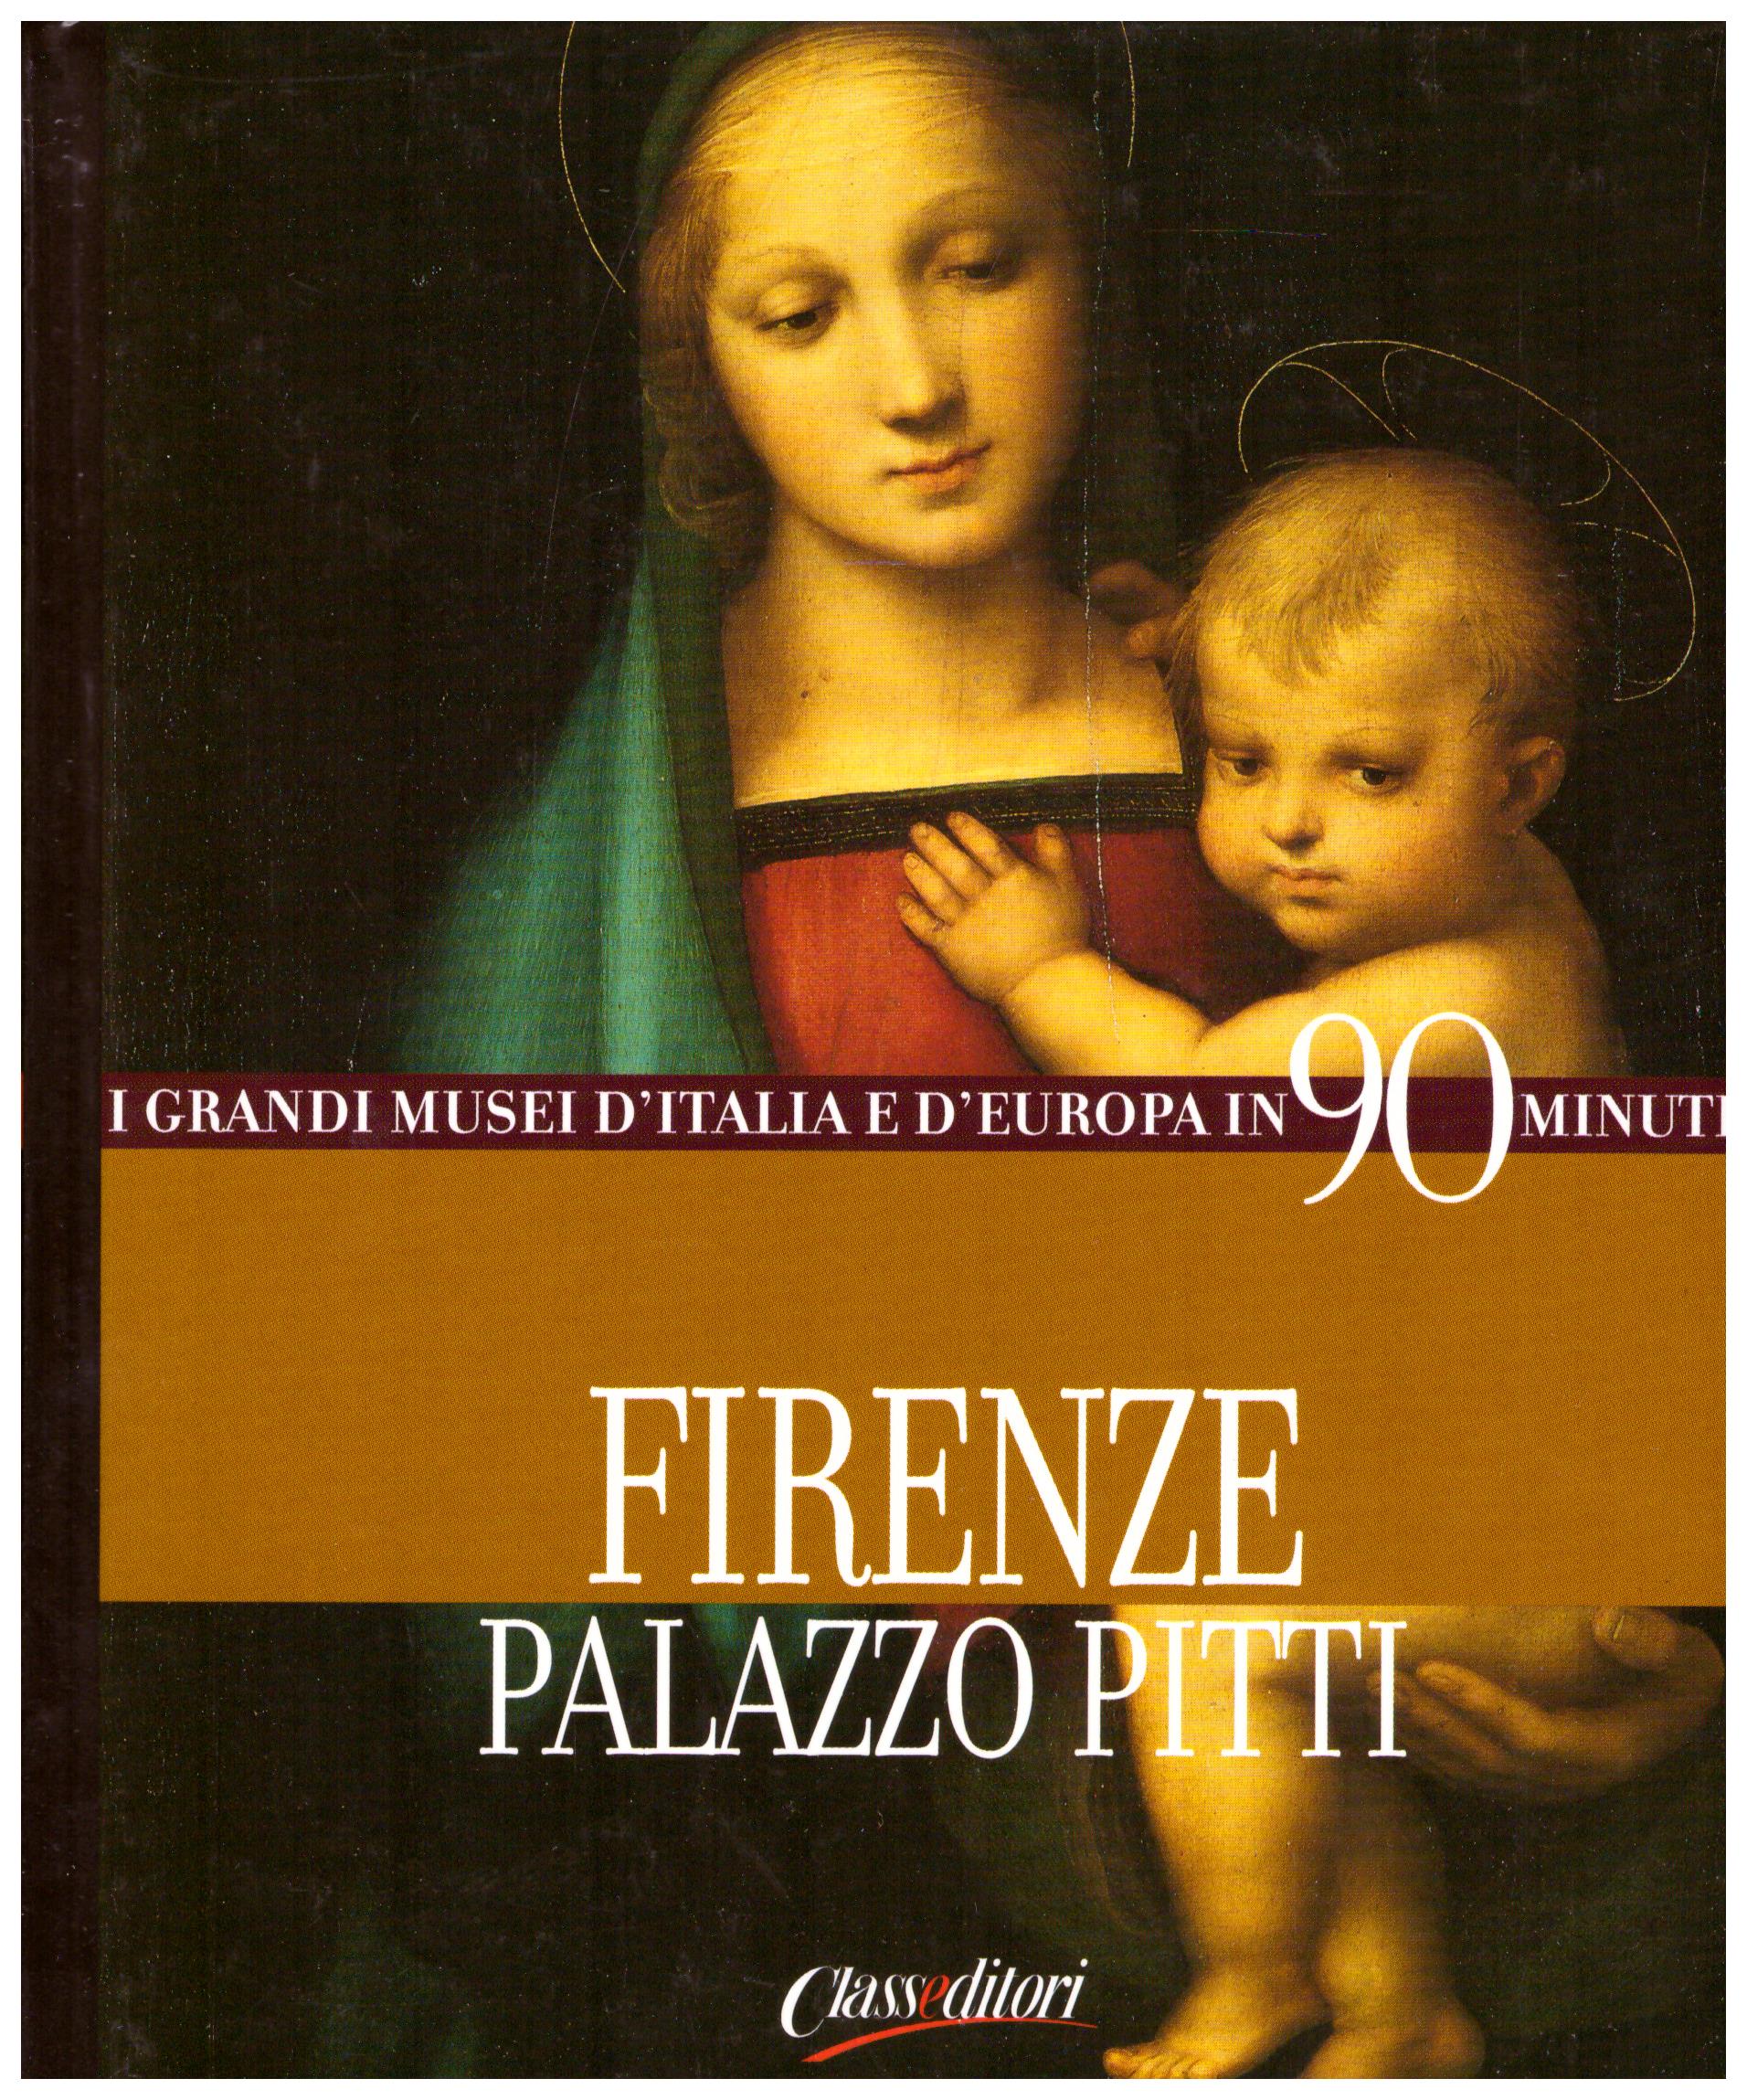 Titolo: I grandi musei d'italia e d'Europa in 90 minuti, Firenze palazzo Pitti Autore : AA.VV.  Editore: class editori